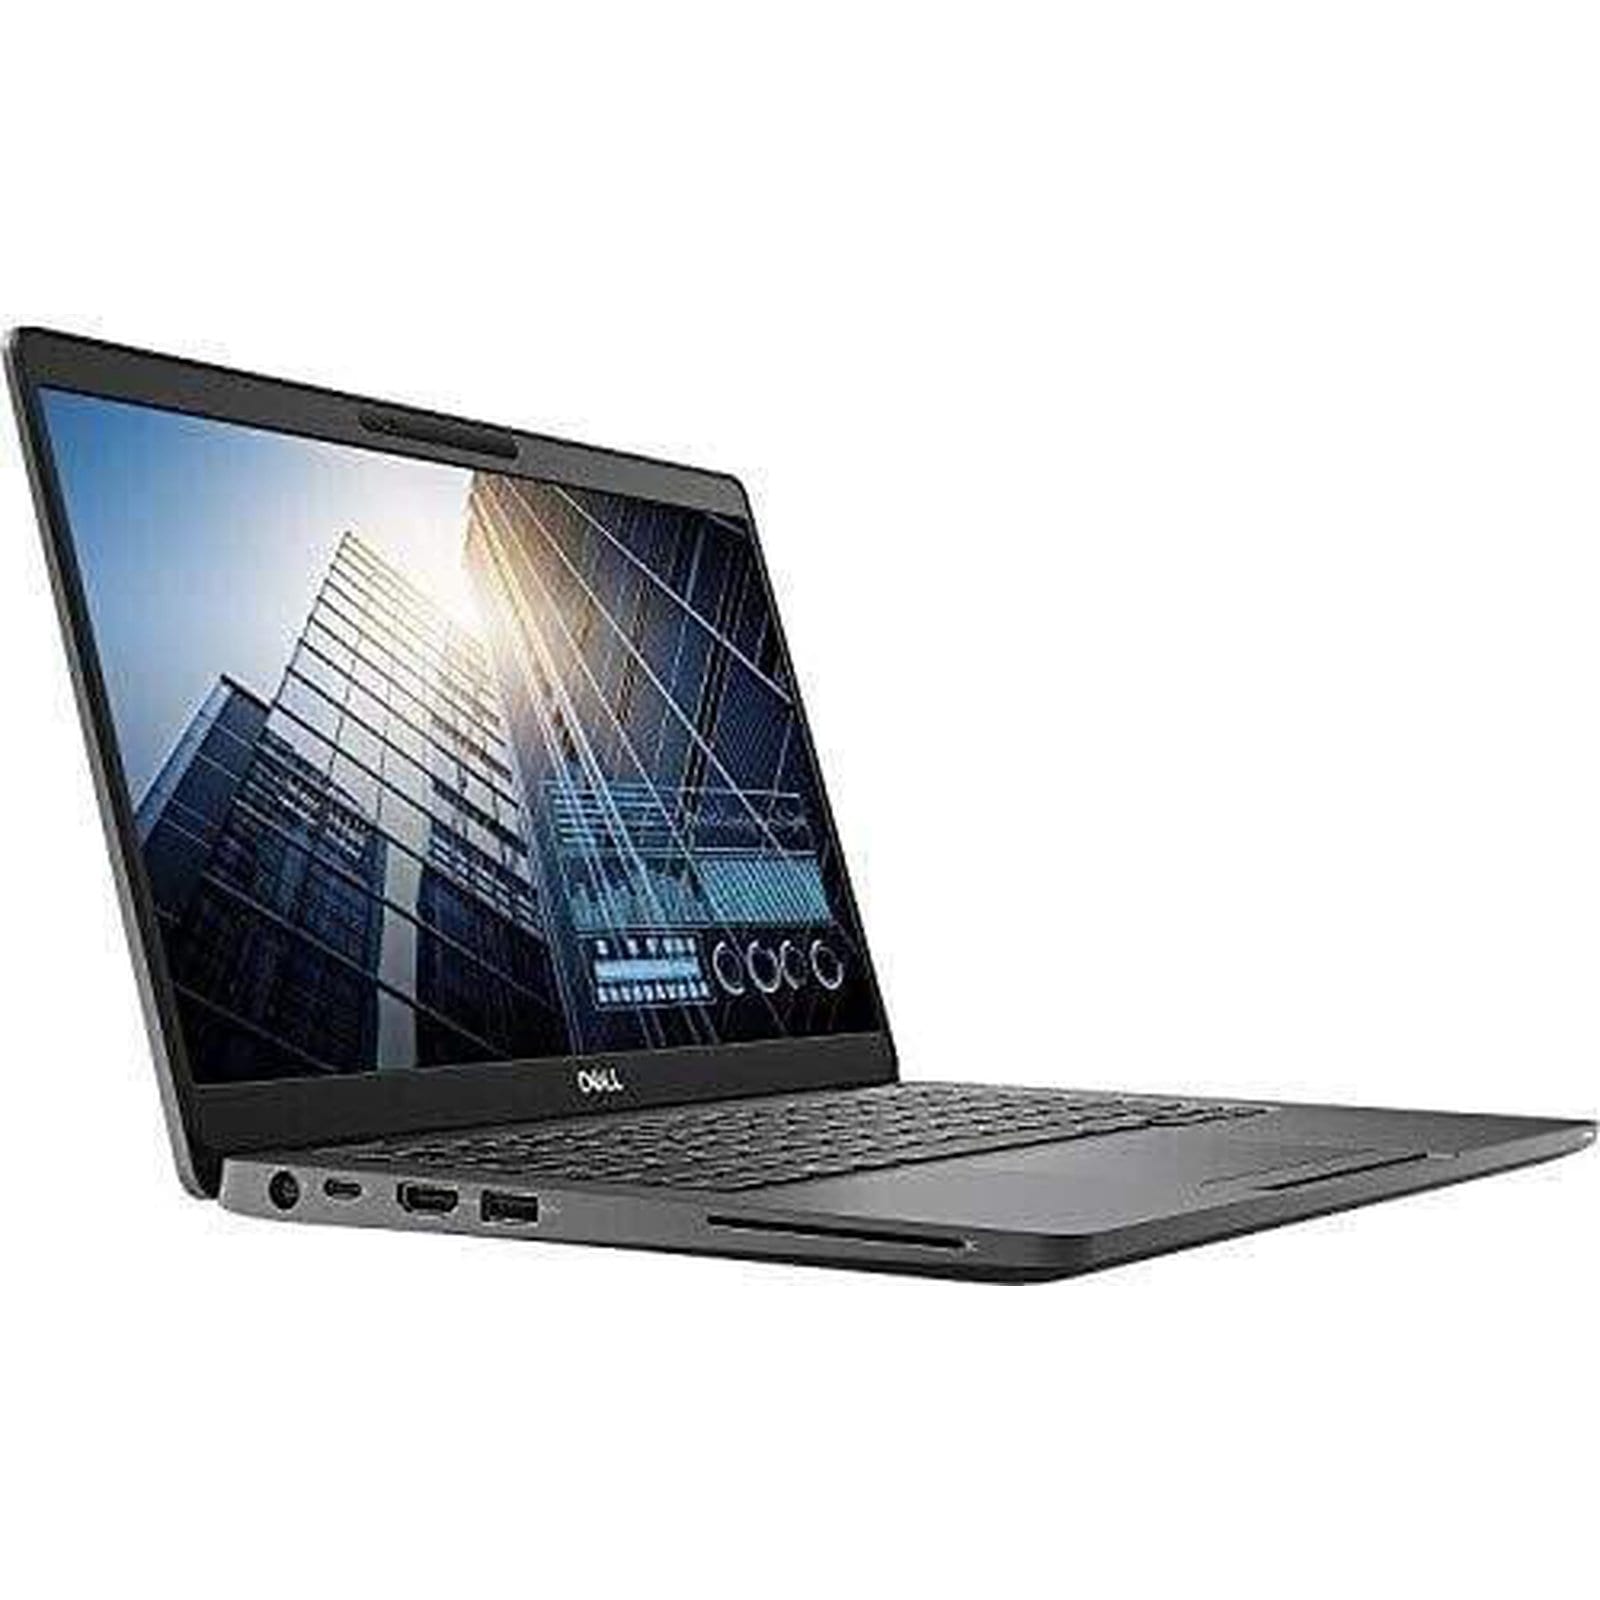 BSB-VWVEJ1XJ7JWU3L6C-REF-REF-LAP-DL 2019 Dell Latitude 5300 Laptop 13.3" - i5 - i5-8265U - Quad Core 3.9Ghz - 256GB SSD - 16GB RAM - 1920x1080 FHD Touchscreen - Windows 10 Pro Black